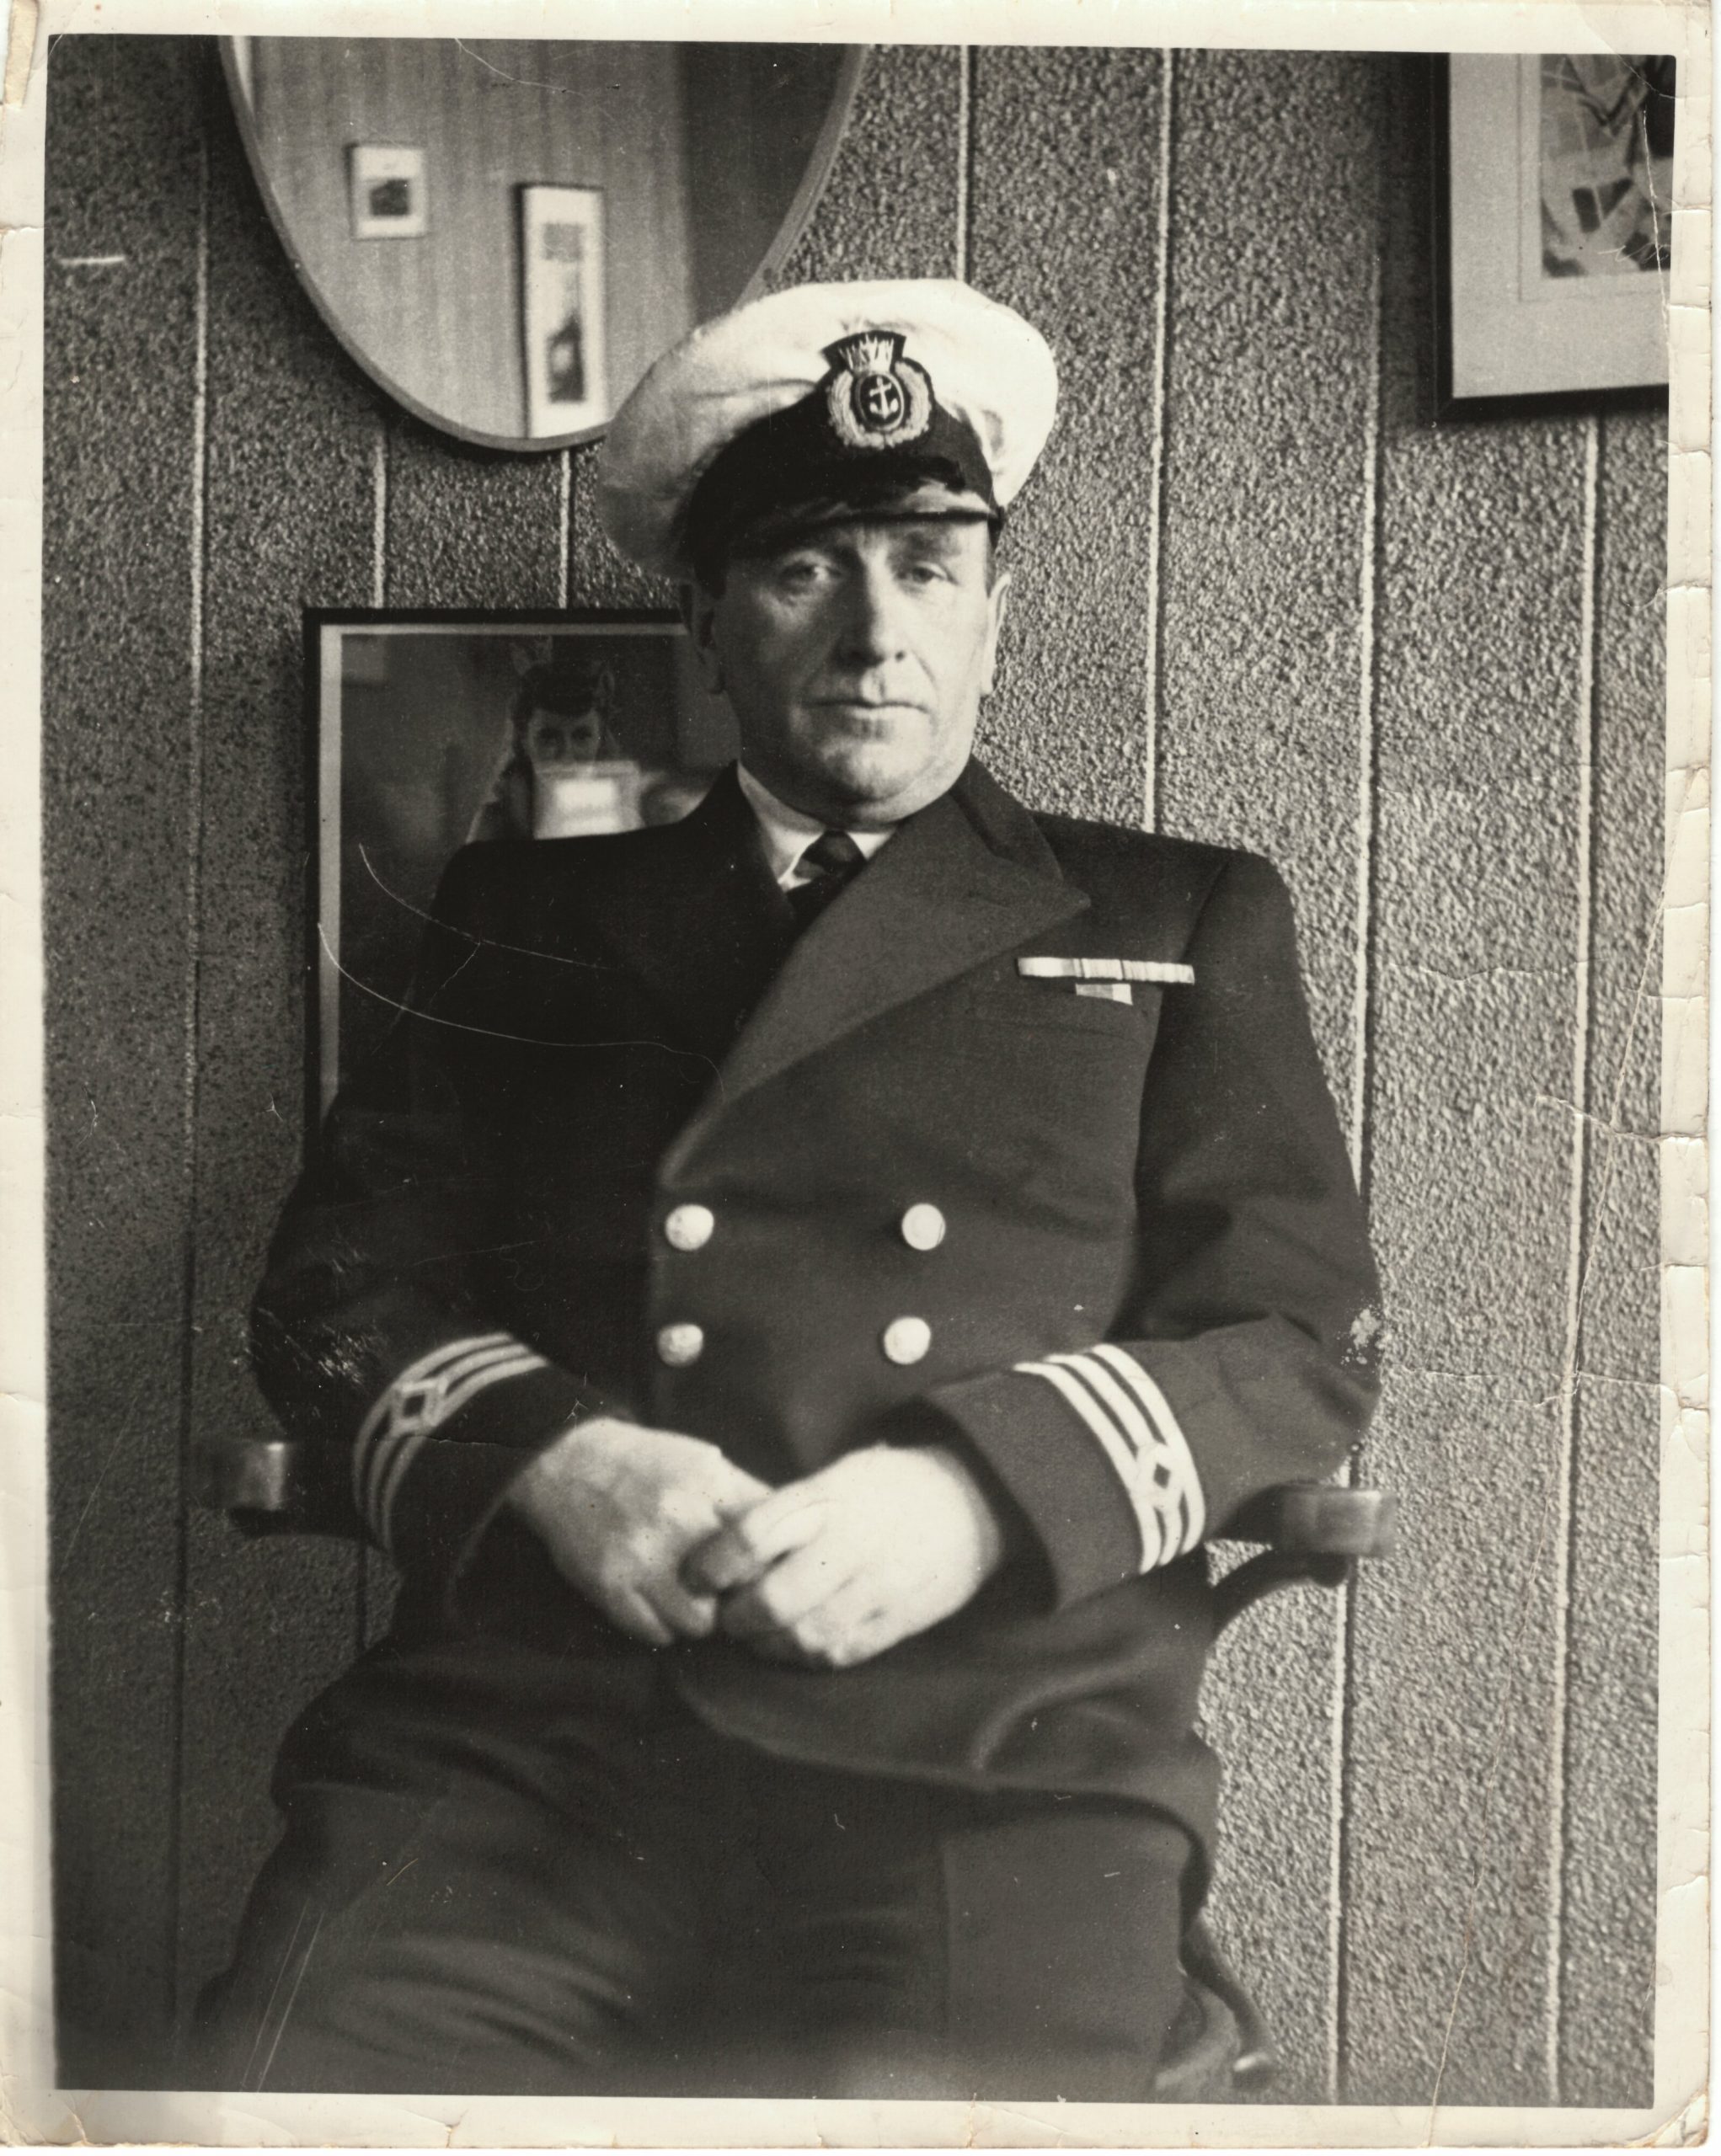 Capt. W.E. Meade